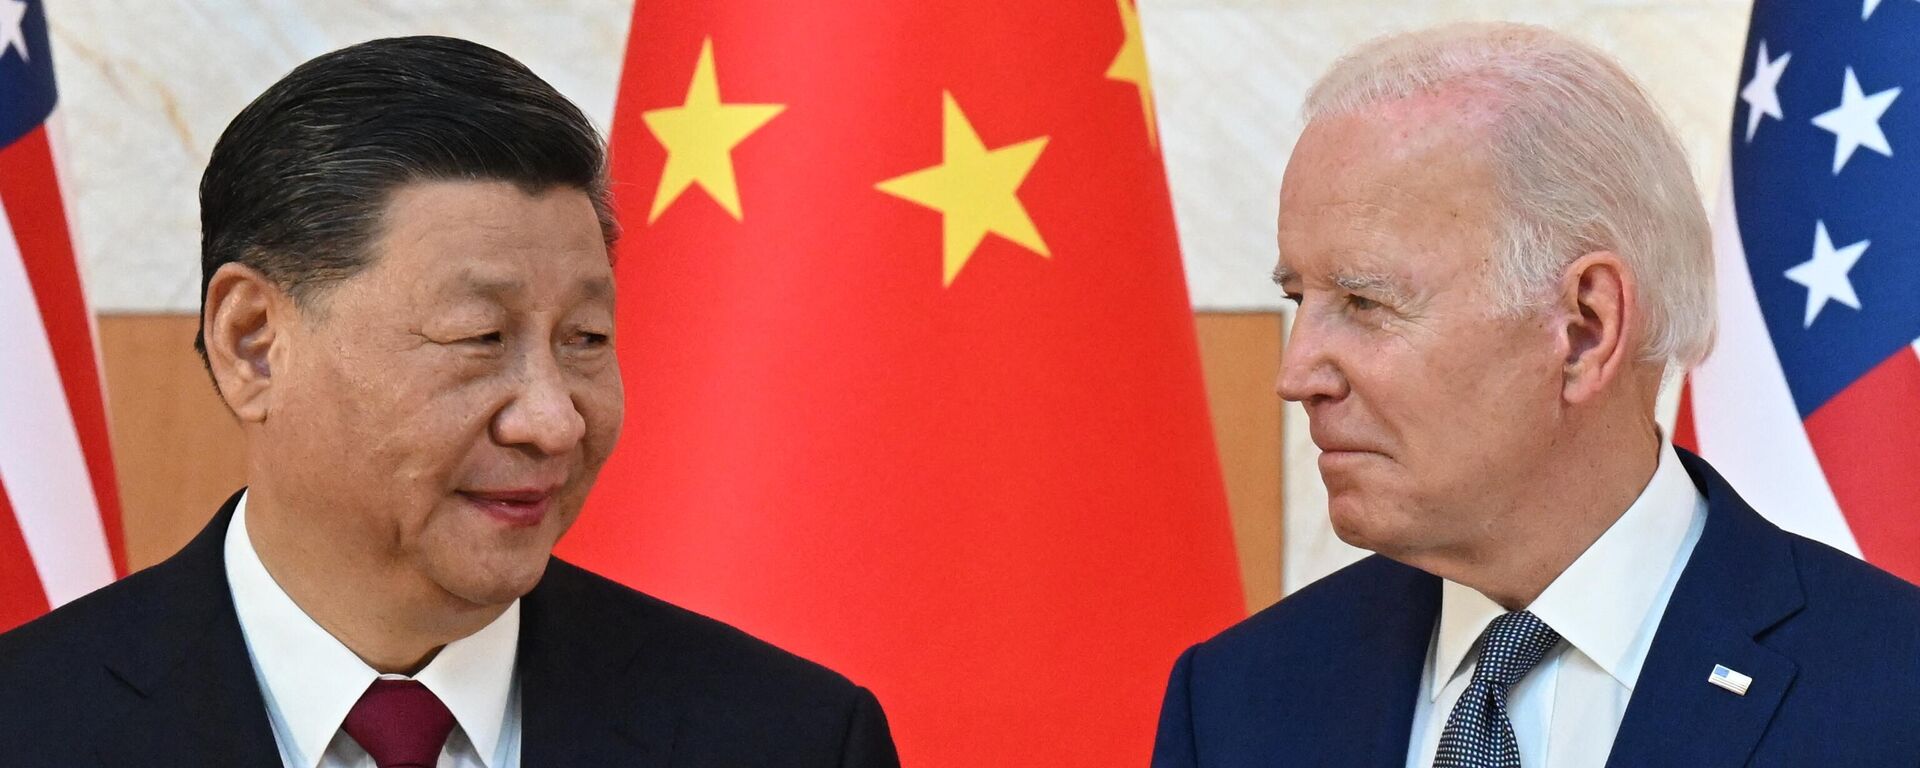 ABD Başkanı Joe Biden ile Çin Devlet Başkanı Şi Cinping arasındaki ilk yüz yüze görüşme, Endonezya'nın Bali Adası'nda düzenlenen G20 zirvesinde gerçekleşti. - Sputnik Türkiye, 1920, 14.11.2022